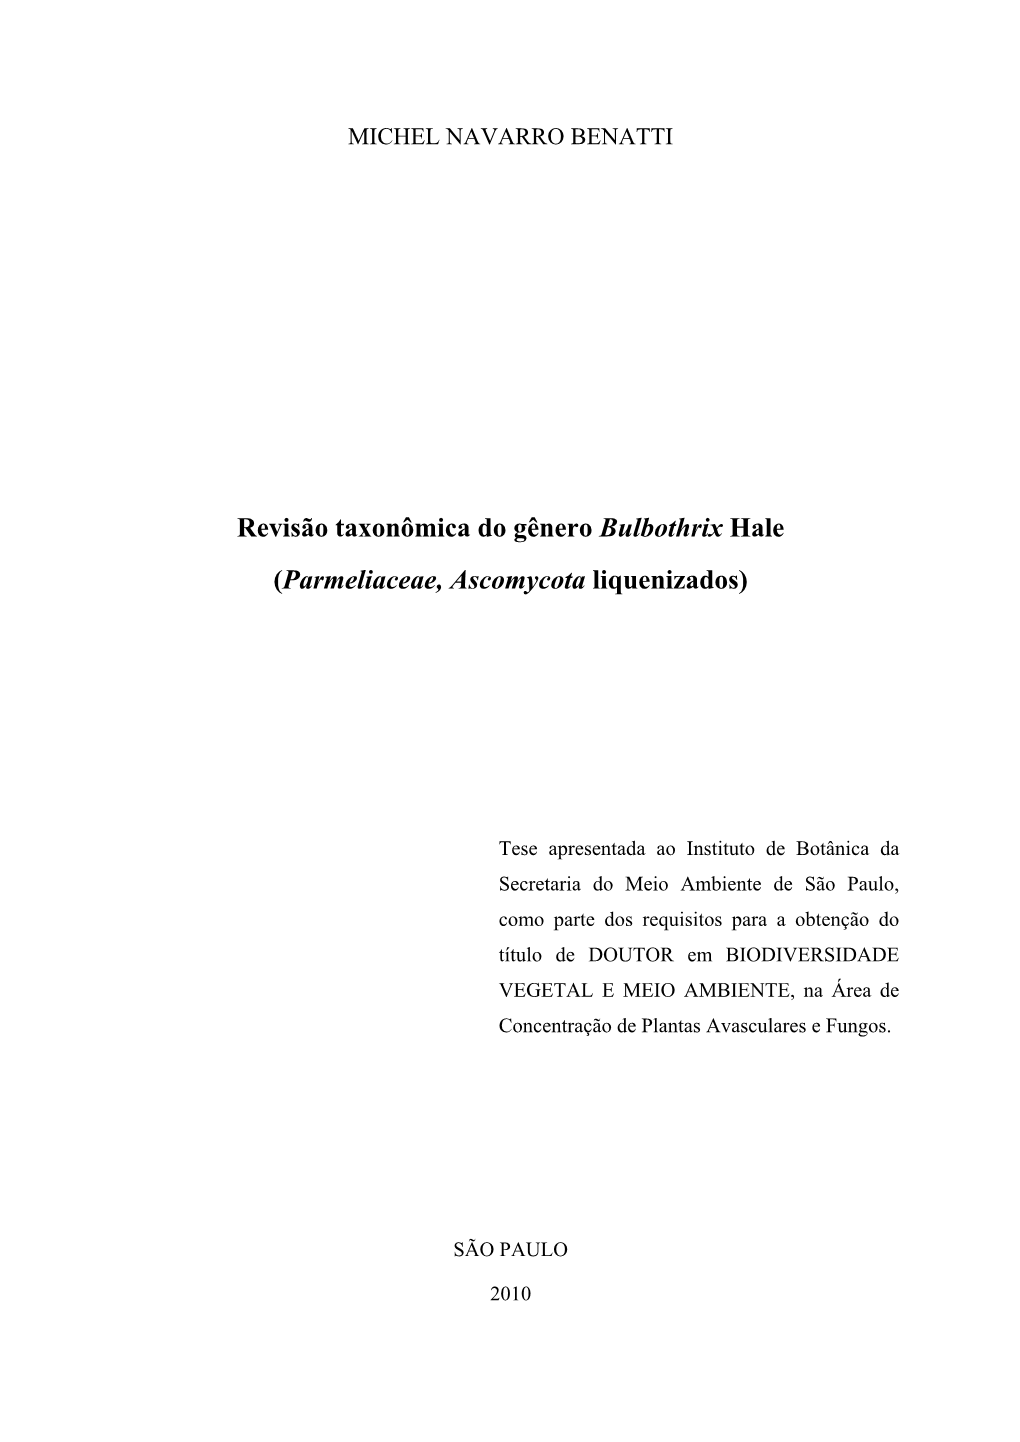 Revisão Taxonômica Do Gênero Bulbothrix Hale (Parmeliaceae, Ascomycota Liquenizados)